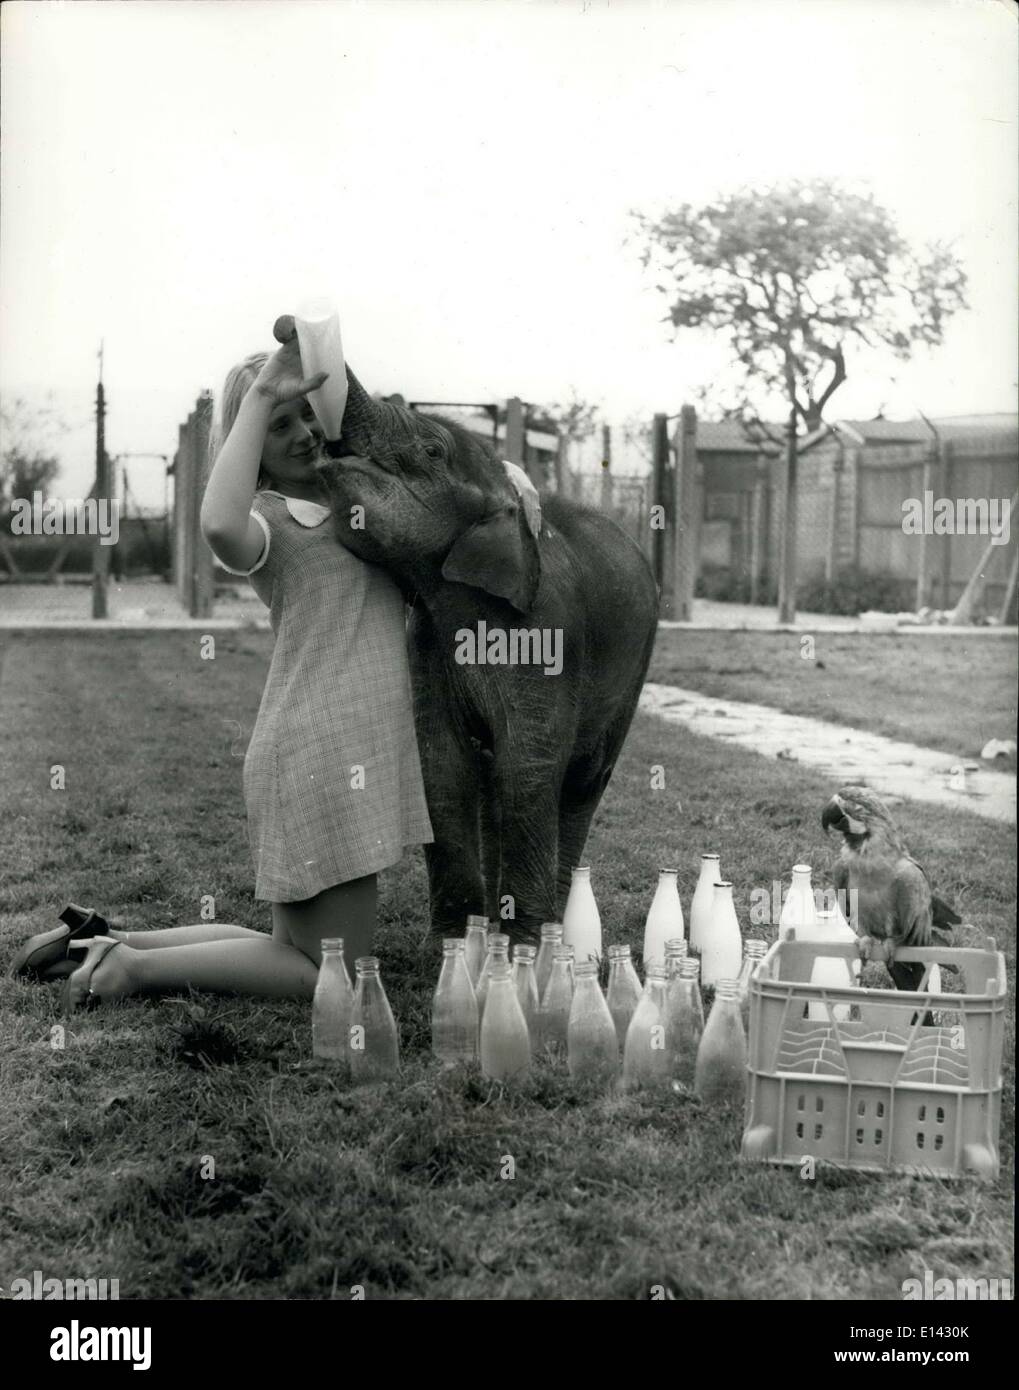 31 mars 2012 - Baby Drinks 24 Pintas - A Day!: C'est une tâche assez à suivre avec un animal qui boit 24 pintes de lait par jour - surtout quand il a seulement six mois - et a encore beaucoup de croissance à faire. Mme Pat Dellar, qui dirige une agence de modèles d'animaux à Lemsford, Herts., a découvert cela lorsqu'elle a acheté Ele, un éléphant de six mois au zoo de Bedford. Ele, qui mange environ 10 000 aliments par semaine, n'associe pas le musc à certains autres animaux de compagnie de Mme Dellar, comme le thélion, le puma et les différents chiens, mais elle est une grande amie de Mme Banque D'Images